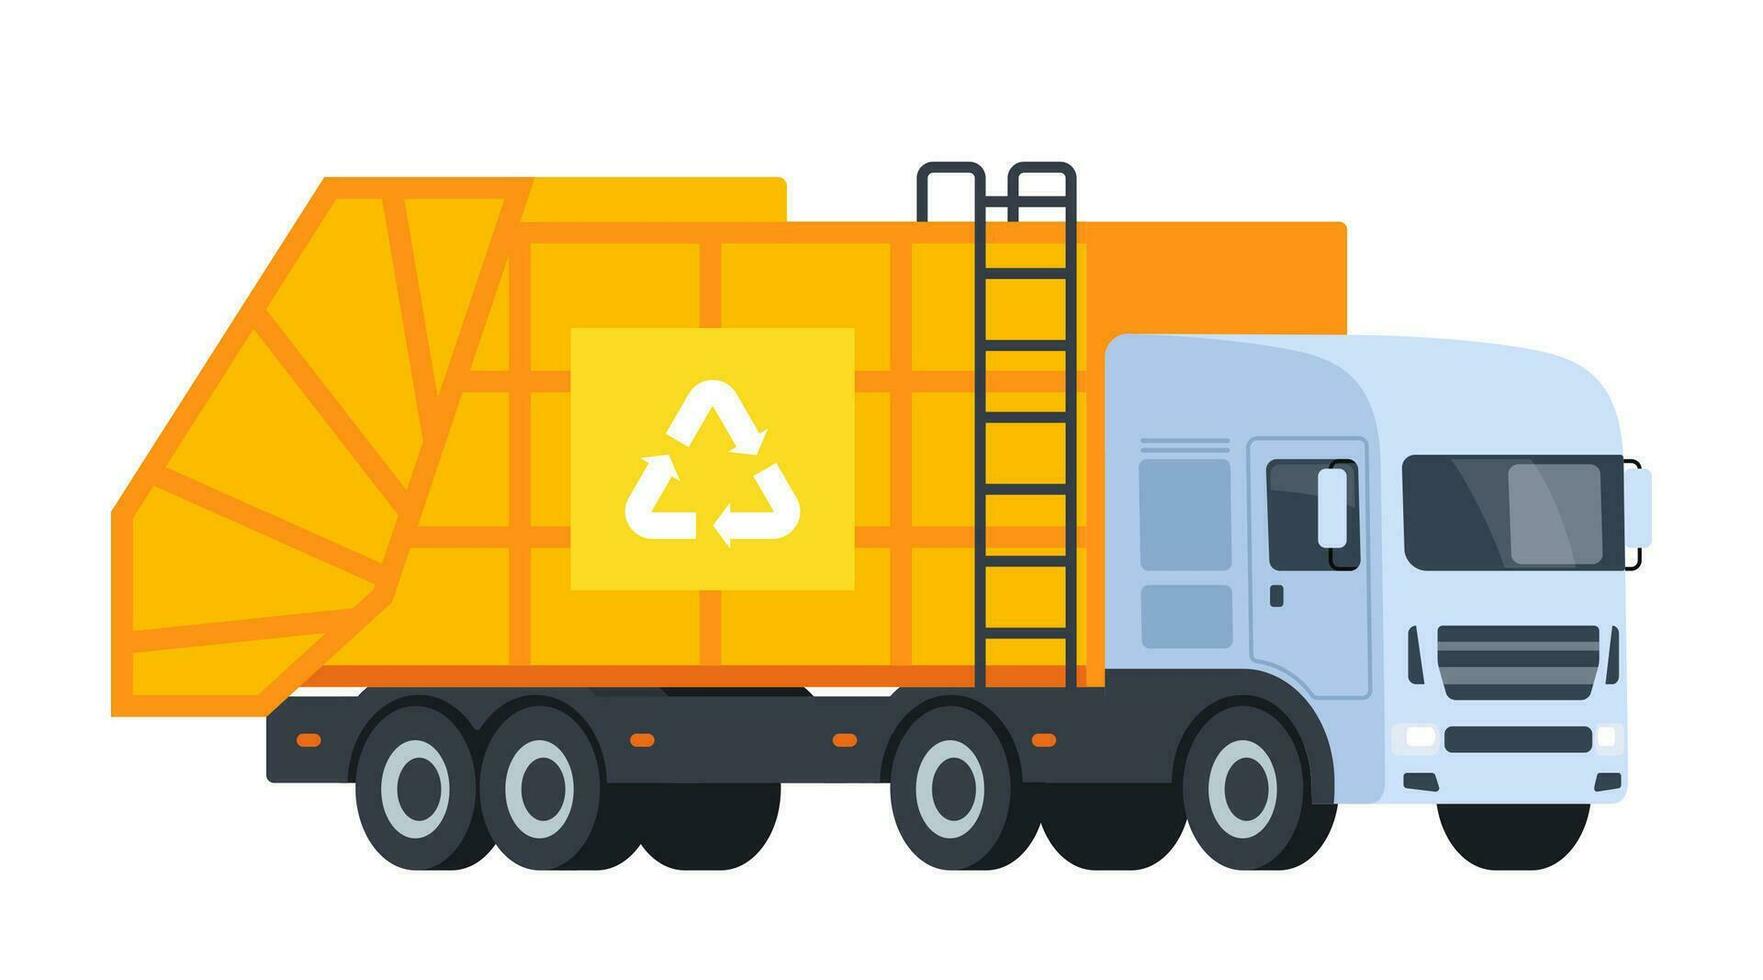 stedelijk vuilnis vrachtwagen. uitschot sorteren, recyclen. vector illustratie.